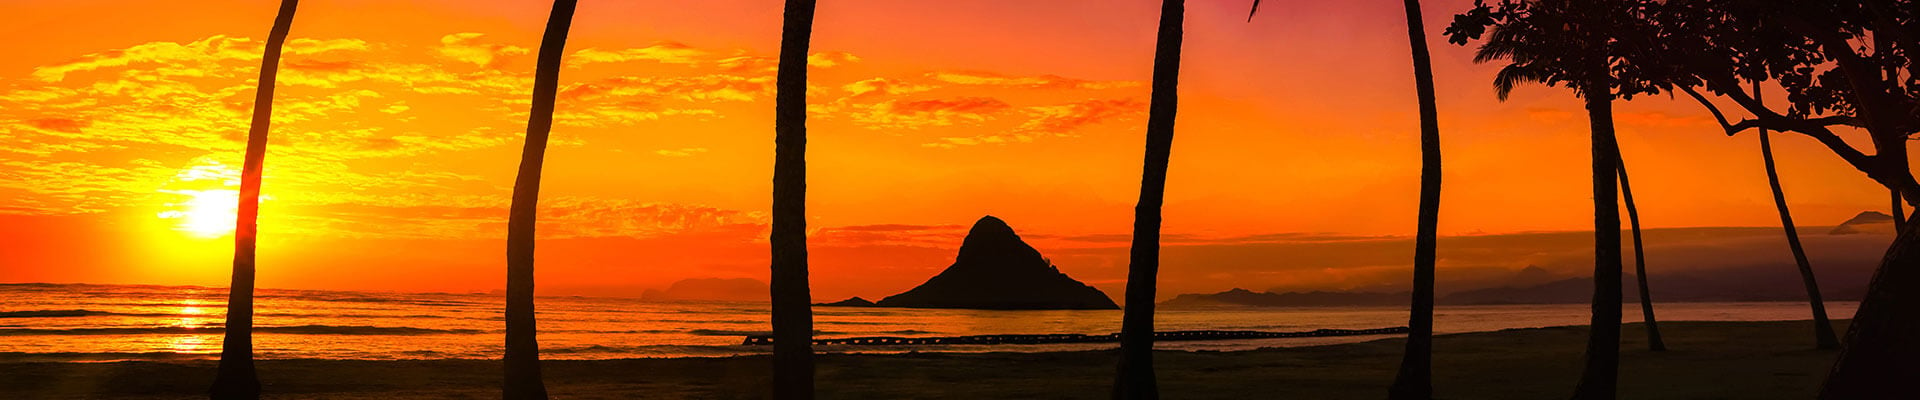 sunset-palm-trees-oahu-hawaii